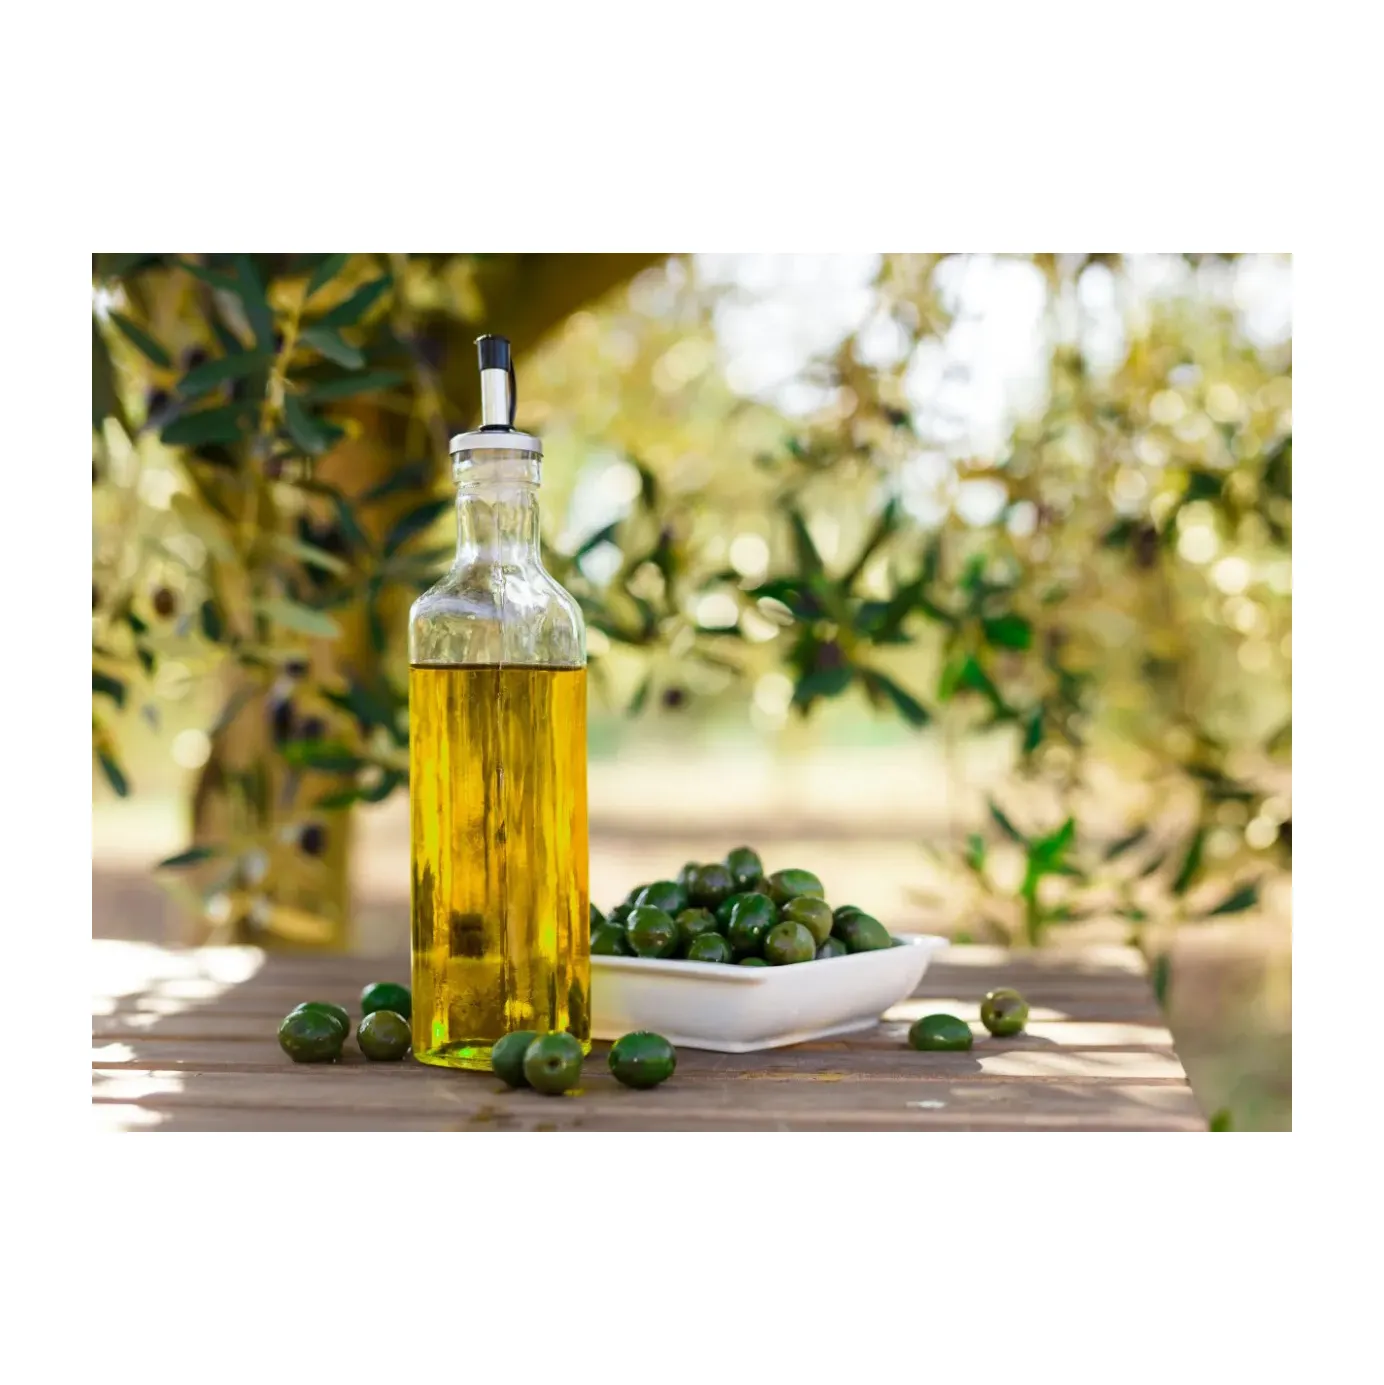 Aceite de oliva puro natural de alta calidad, aceite de oliva para cocinar con aroma refrescante